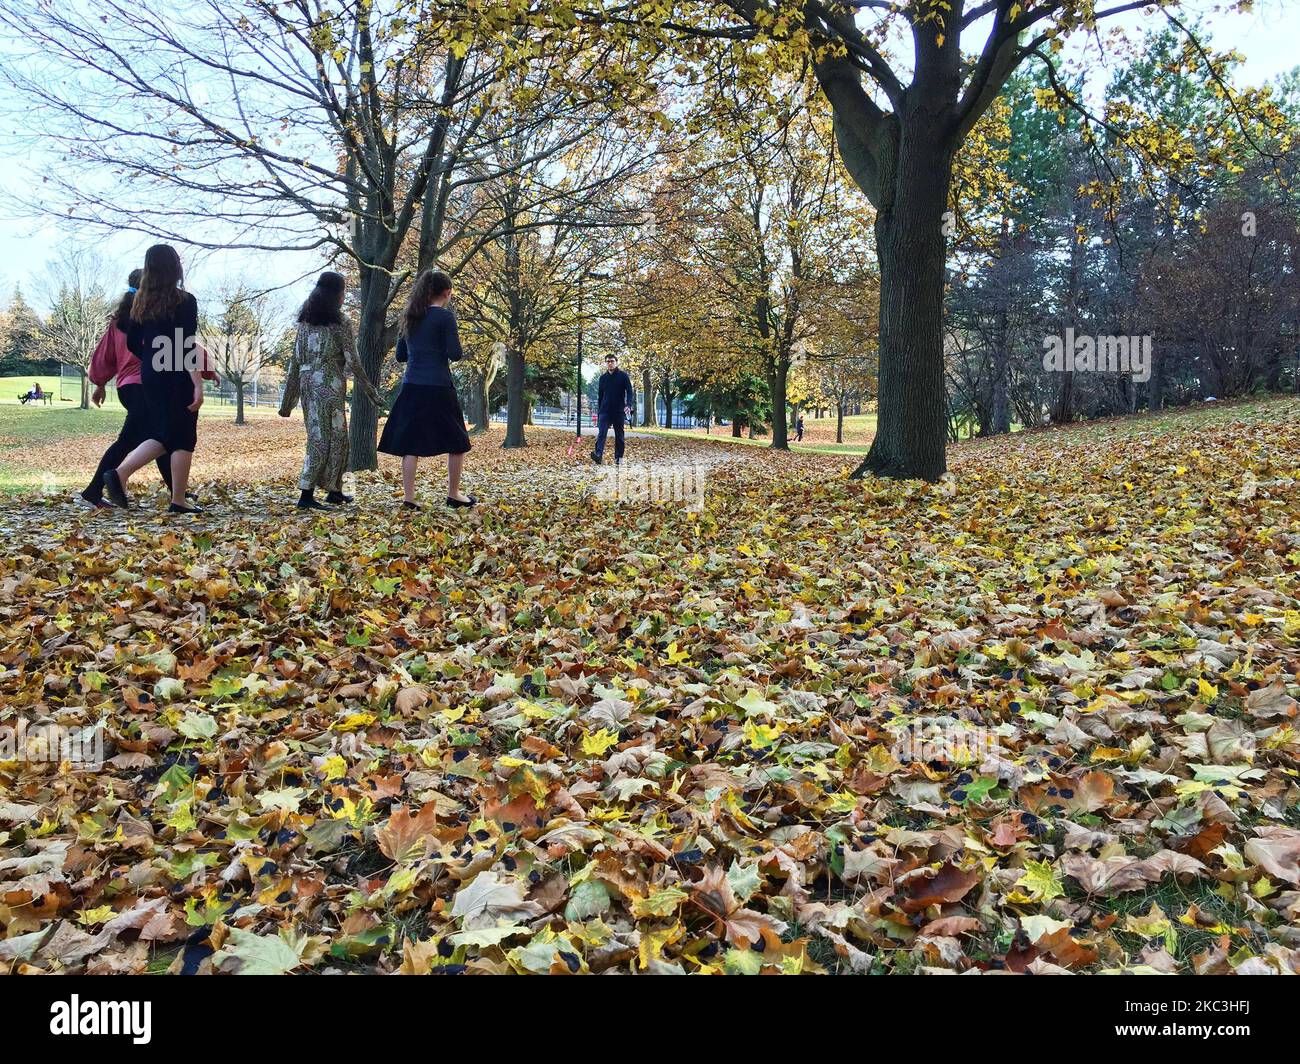 Les gens marchent parmi les feuilles d'automne dans un parc de Toronto, Ontario, Canada, on 07 novembre 2020. Toronto connaît la période la plus chaude de novembre de l'histoire avec des températures atteignant 20 degrés celsius. La température élevée de vendredi de 20,8 °C a battu le record de 20,5 °C établi en 2015 et les températures du dimanche à Toronto devraient atteindre 20 °C. Cette tendance se poursuivra également dans les premiers jours de la semaine prochaine. (Photo de Creative Touch Imaging Ltd./NurPhoto) Banque D'Images